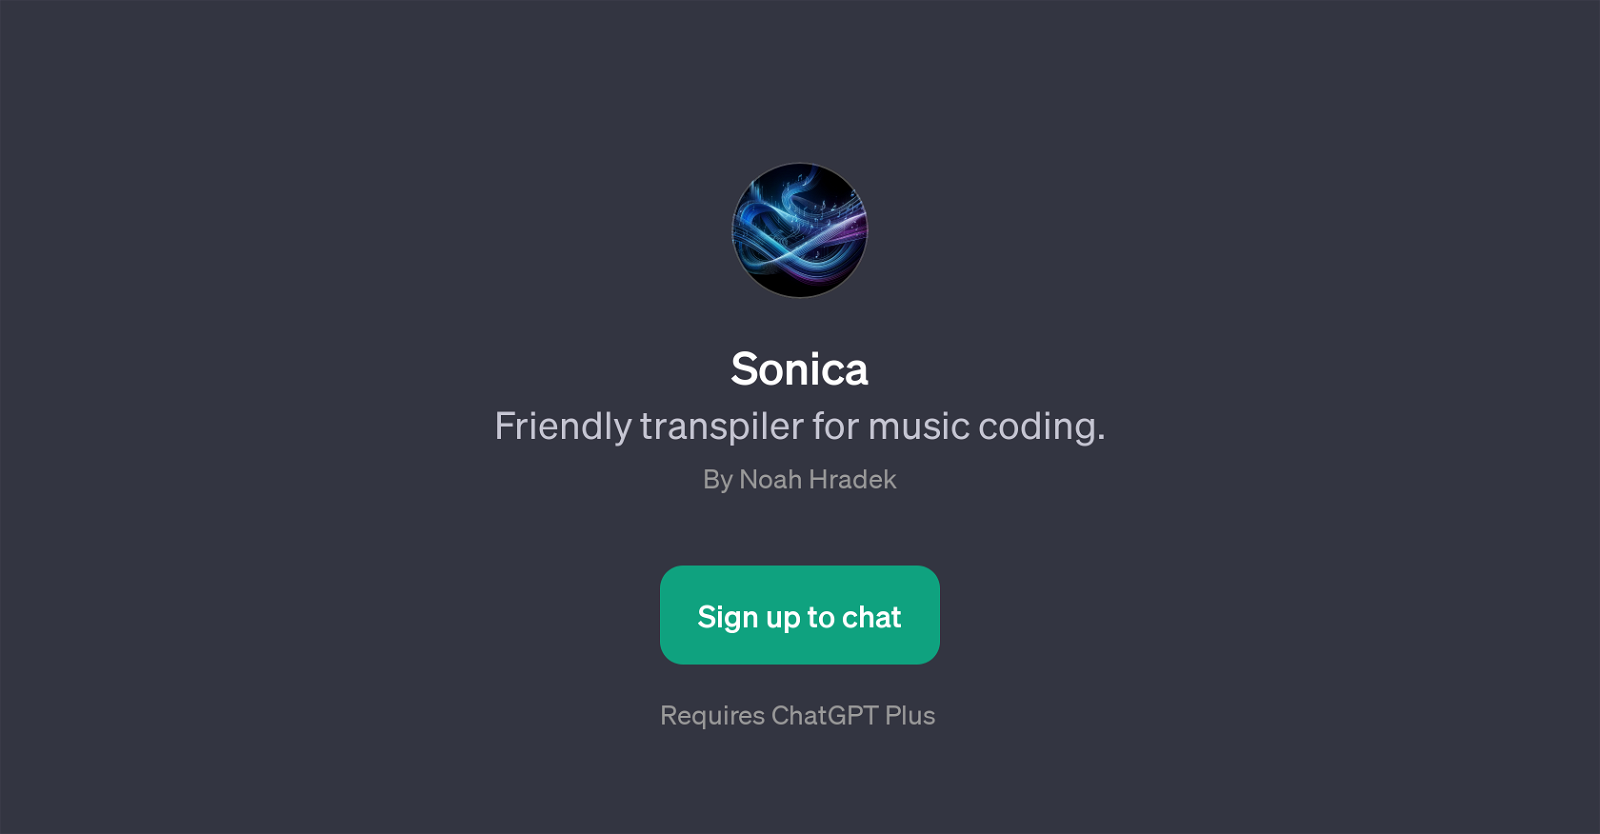 Sonica website